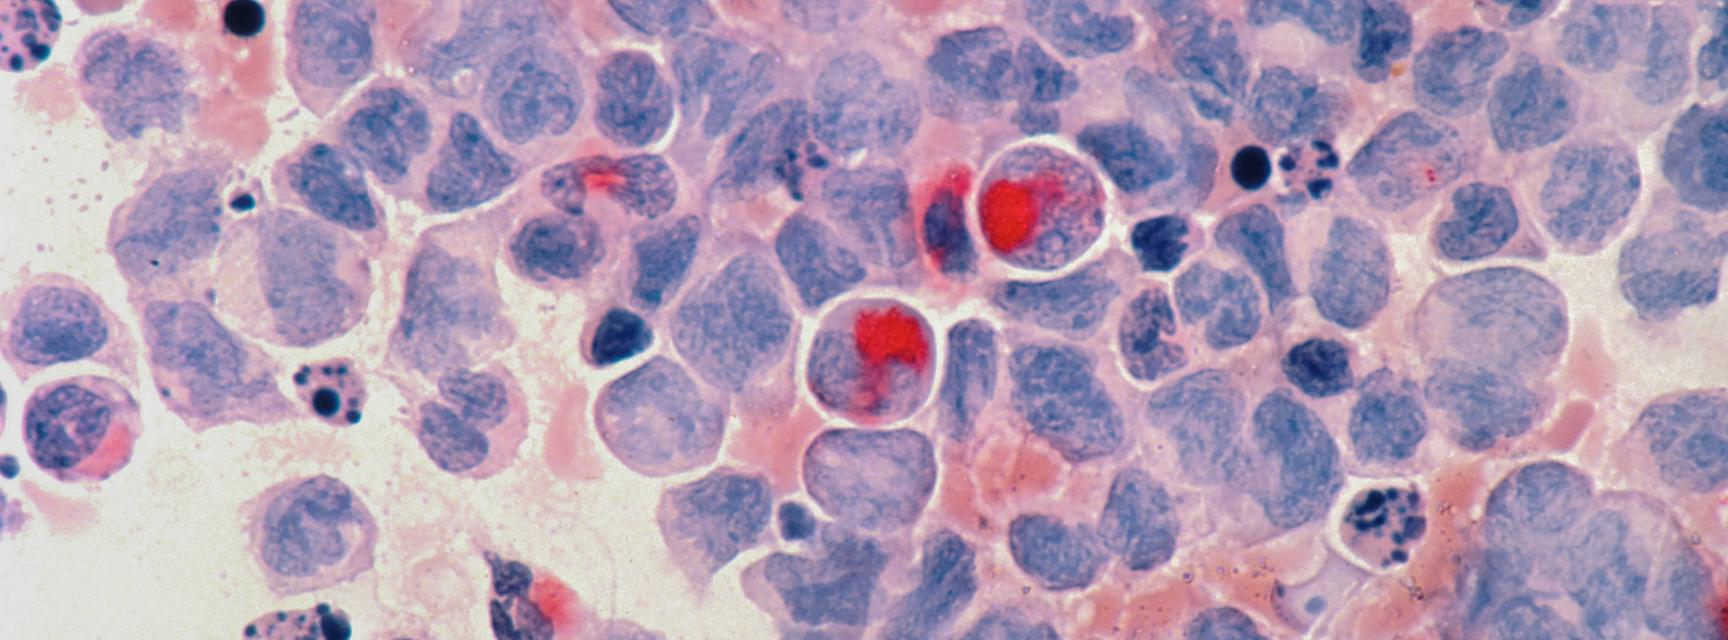 Acute myelocytic leukaemia (AML), Photo by National Cancer Institute on Unsplash 